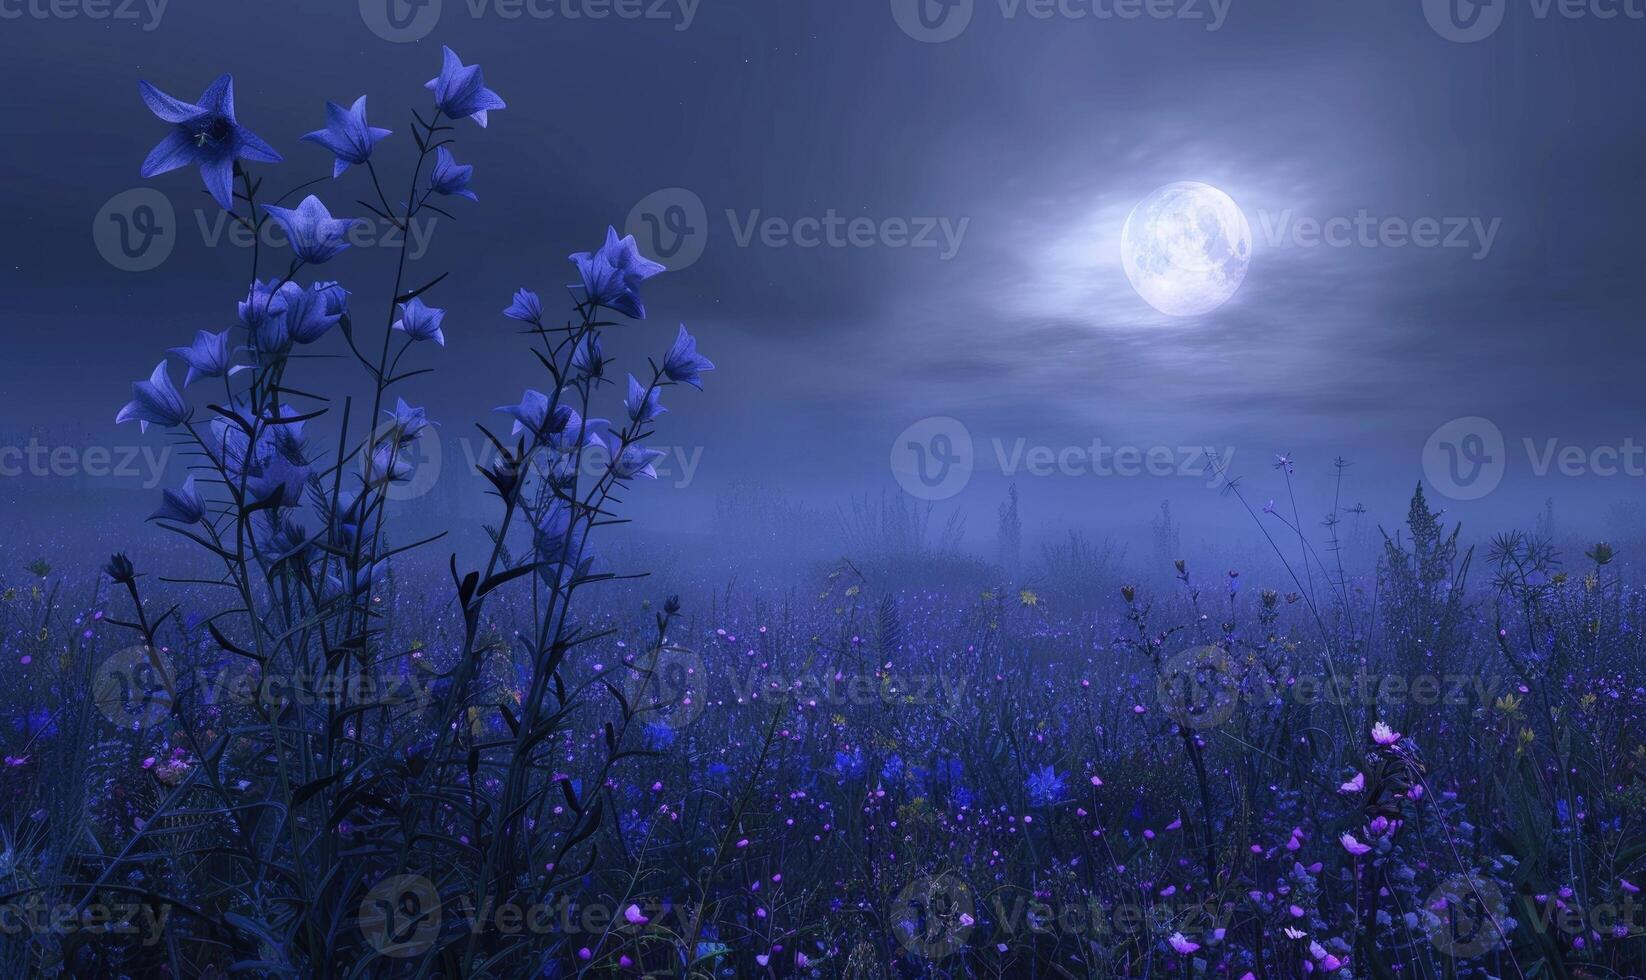 klokjesbloemen in een weide onder de maanlicht, detailopname visie foto